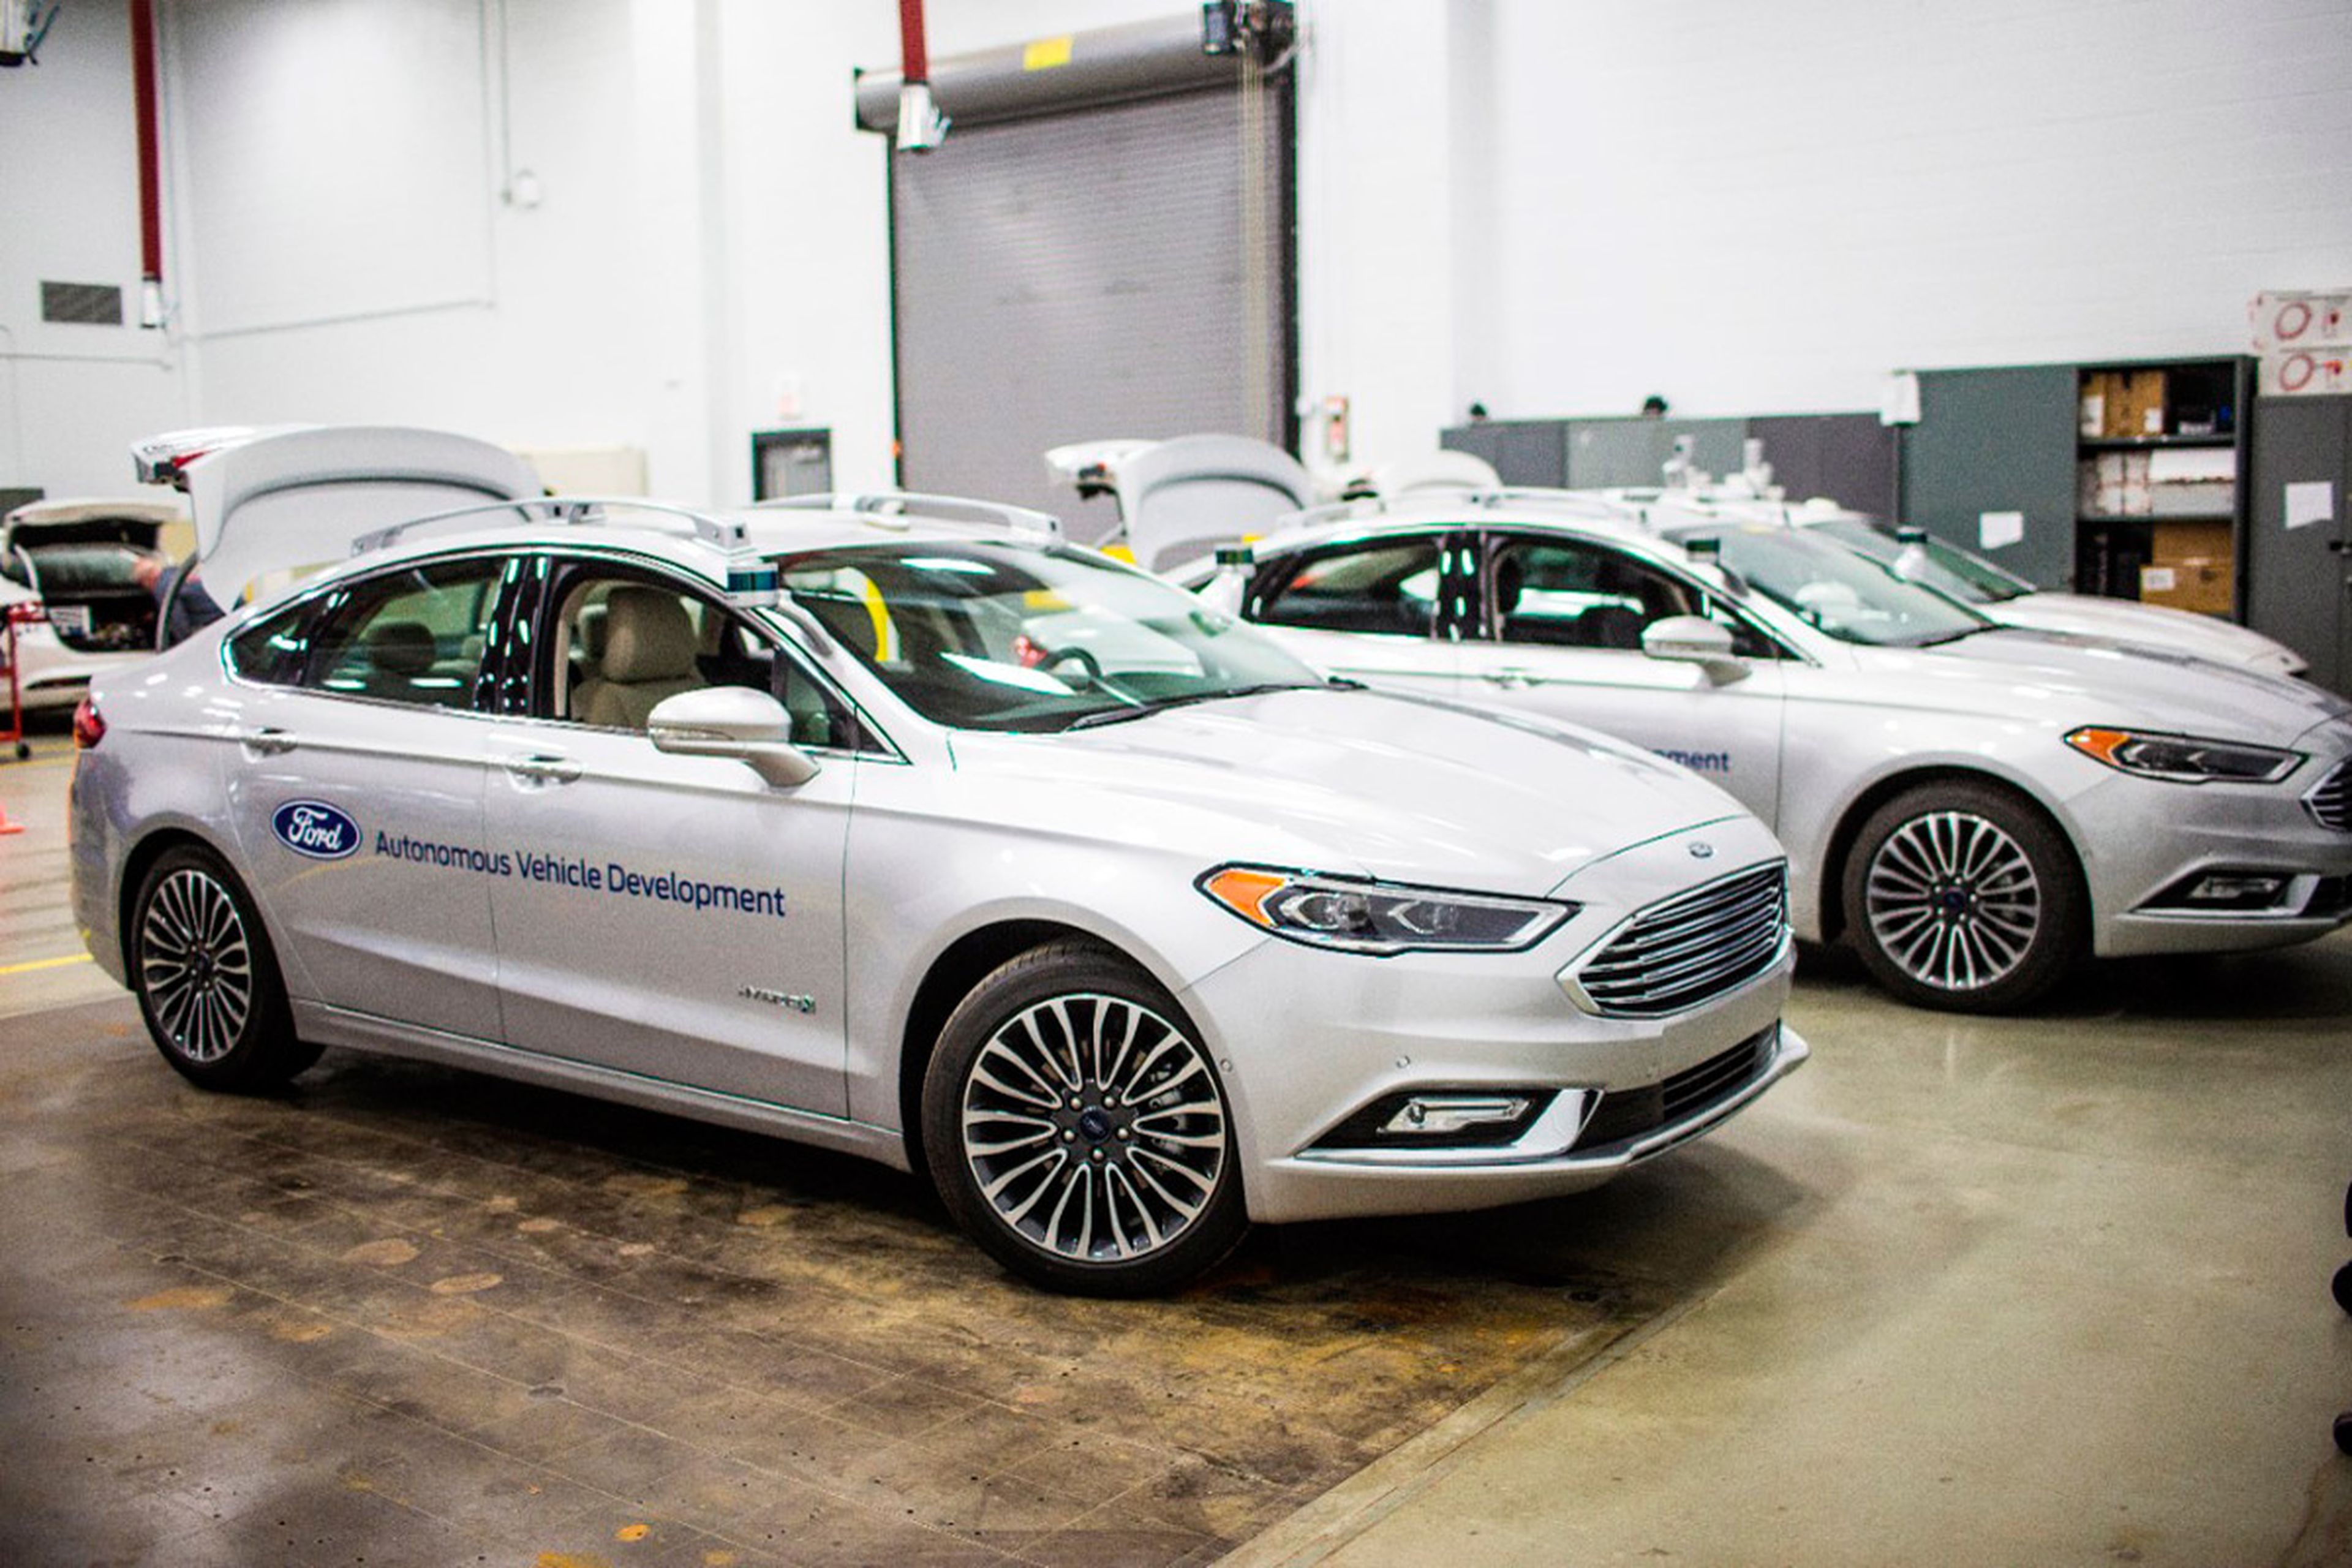 La flota de coches autónomos de Ford está compuesta por Mondeos.